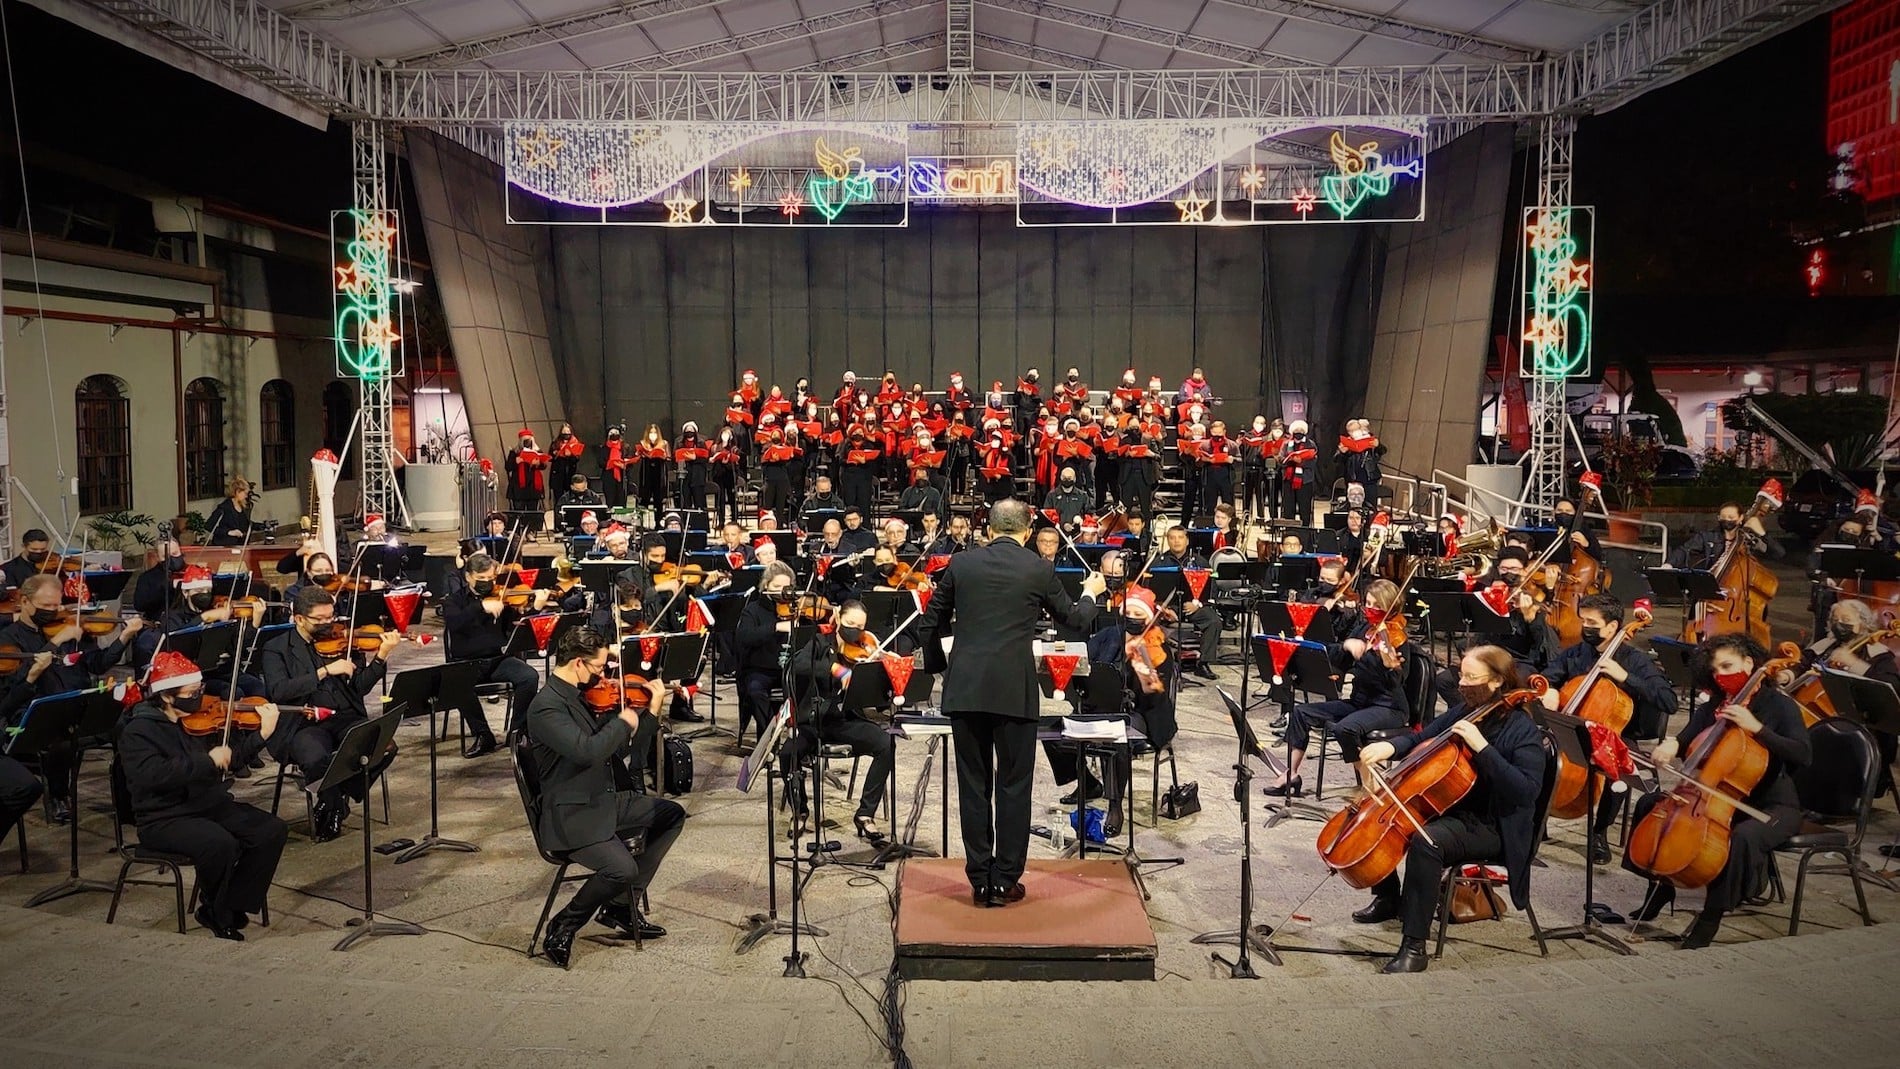 Regresan los tradicionales y gratuitos “Conciertos navideños” con la Orquesta Sinfónica y el Coro Sinfónico Nacional